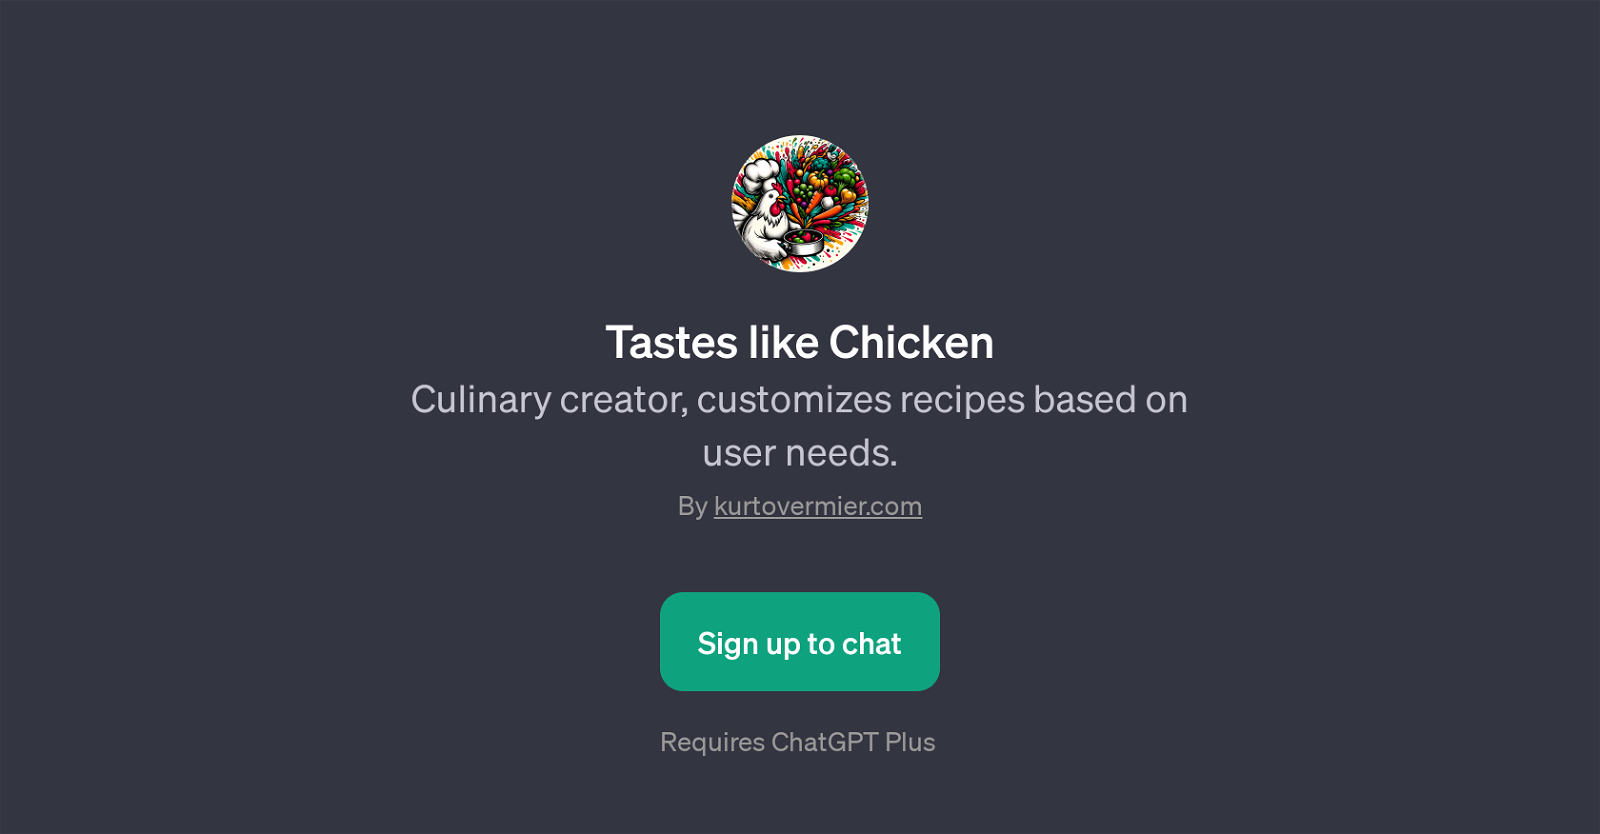 Tastes like Chicken website